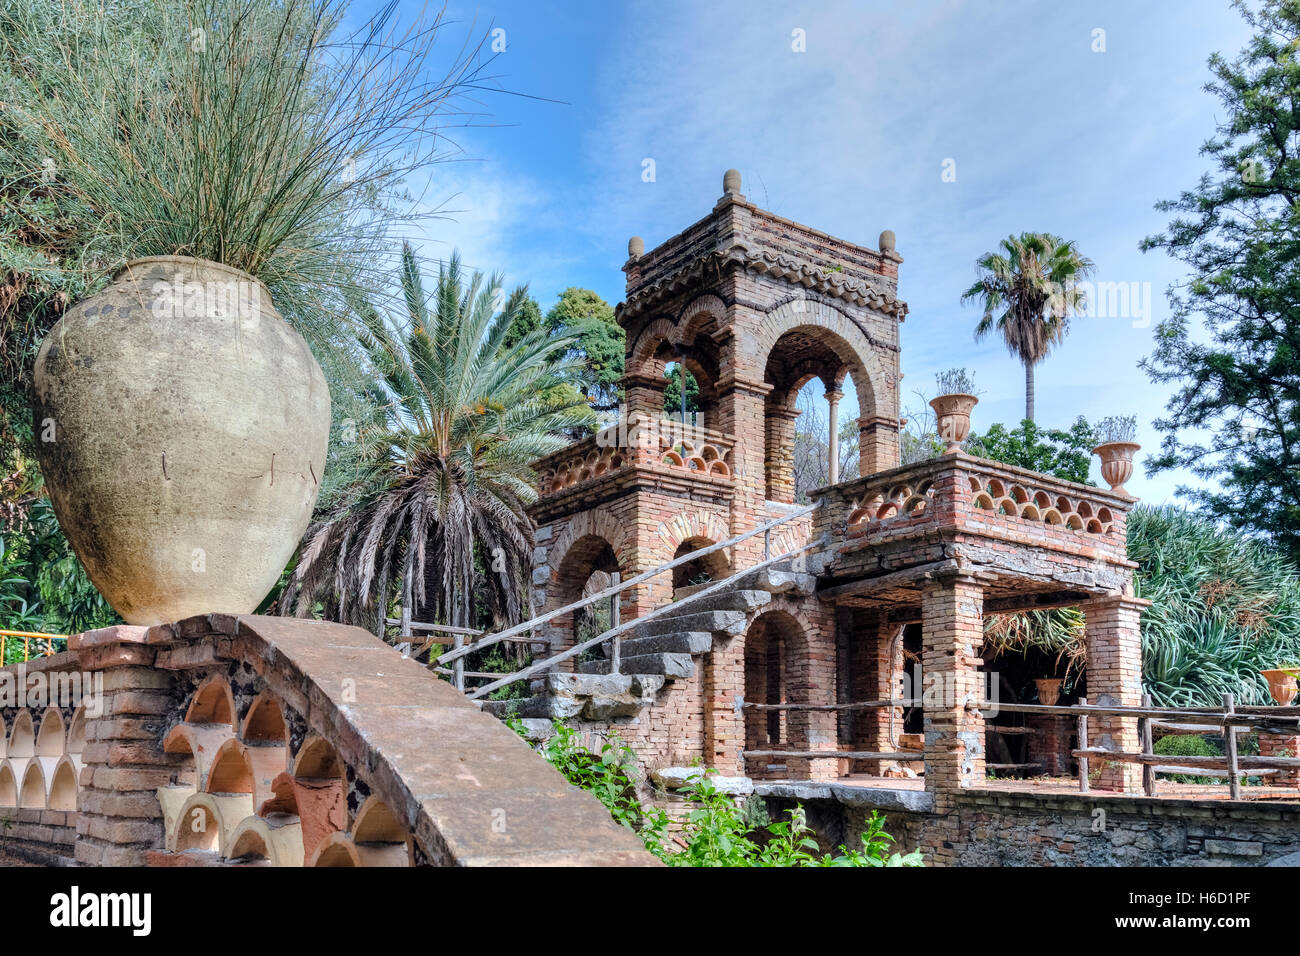 Giardini della Villa Comunale, Taormina, Messina, Sizilien, Italien Stockfoto